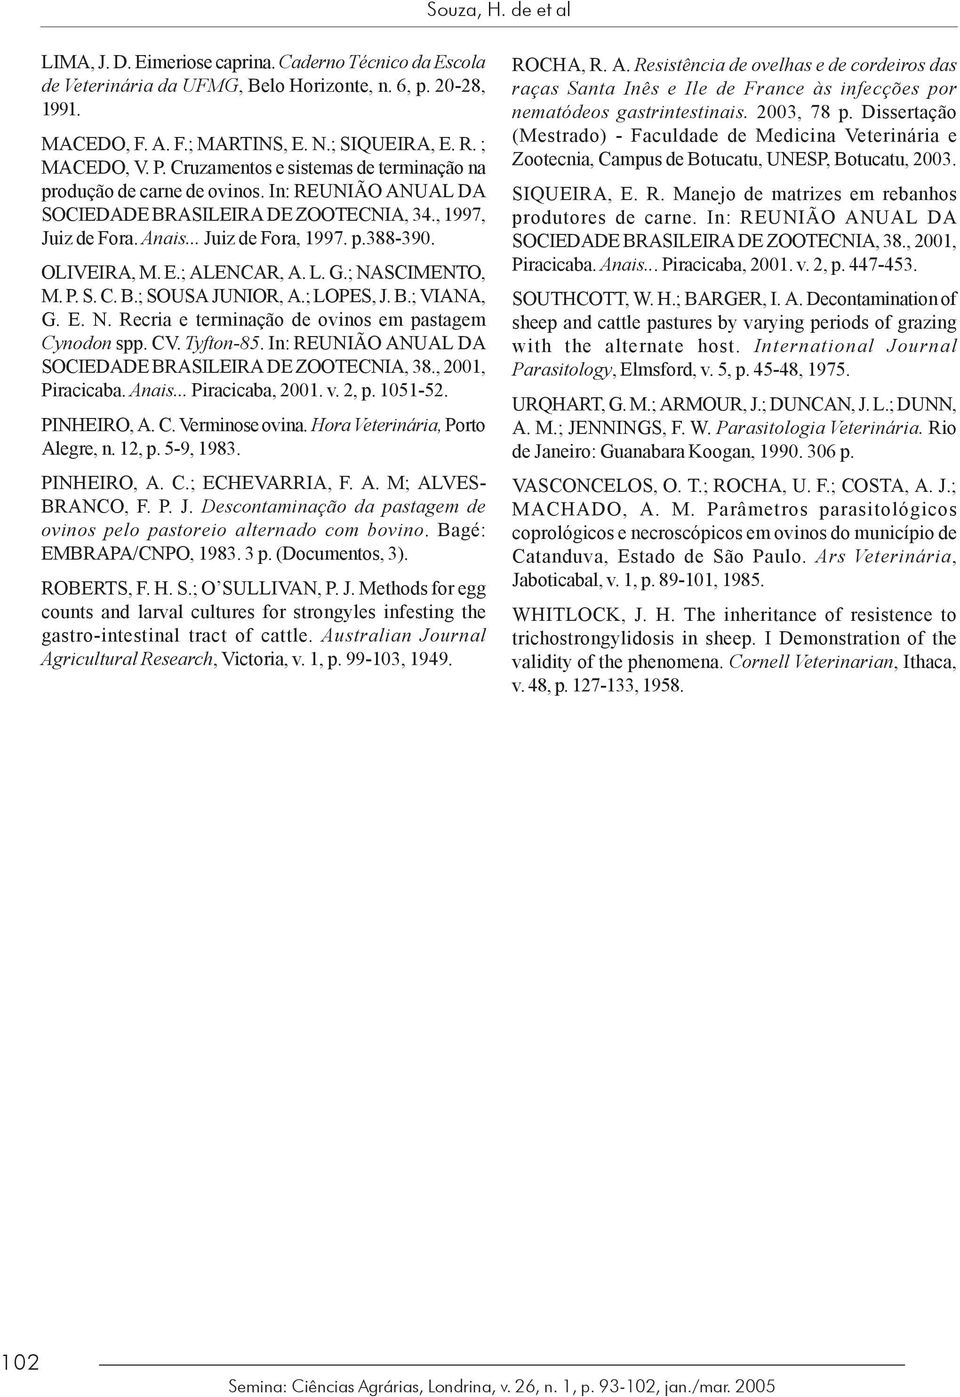 OLIVEIRA, M. E.; ALENCAR, A. L. G.; NASCIMENTO, M. P. S. C. B.; SOUSA JUNIOR, A.; LOPES, J. B.; VIANA, G. E. N. Recria e terminação de ovinos em pastagem Cynodon spp. CV. Tyfton-85.